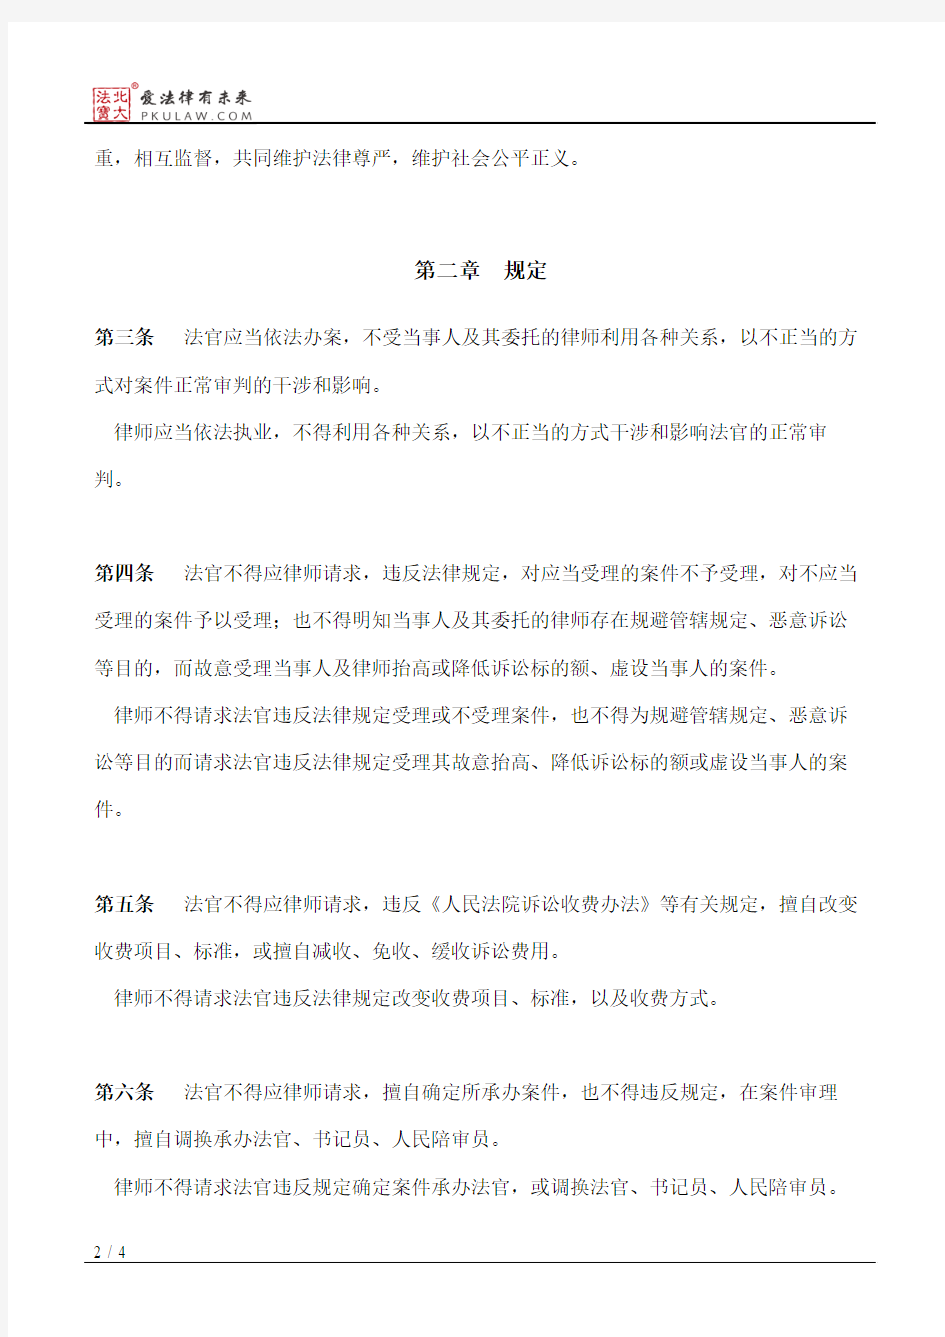 上海市高级人民法院、上海市司法局关于规范法官和律师相互关系的